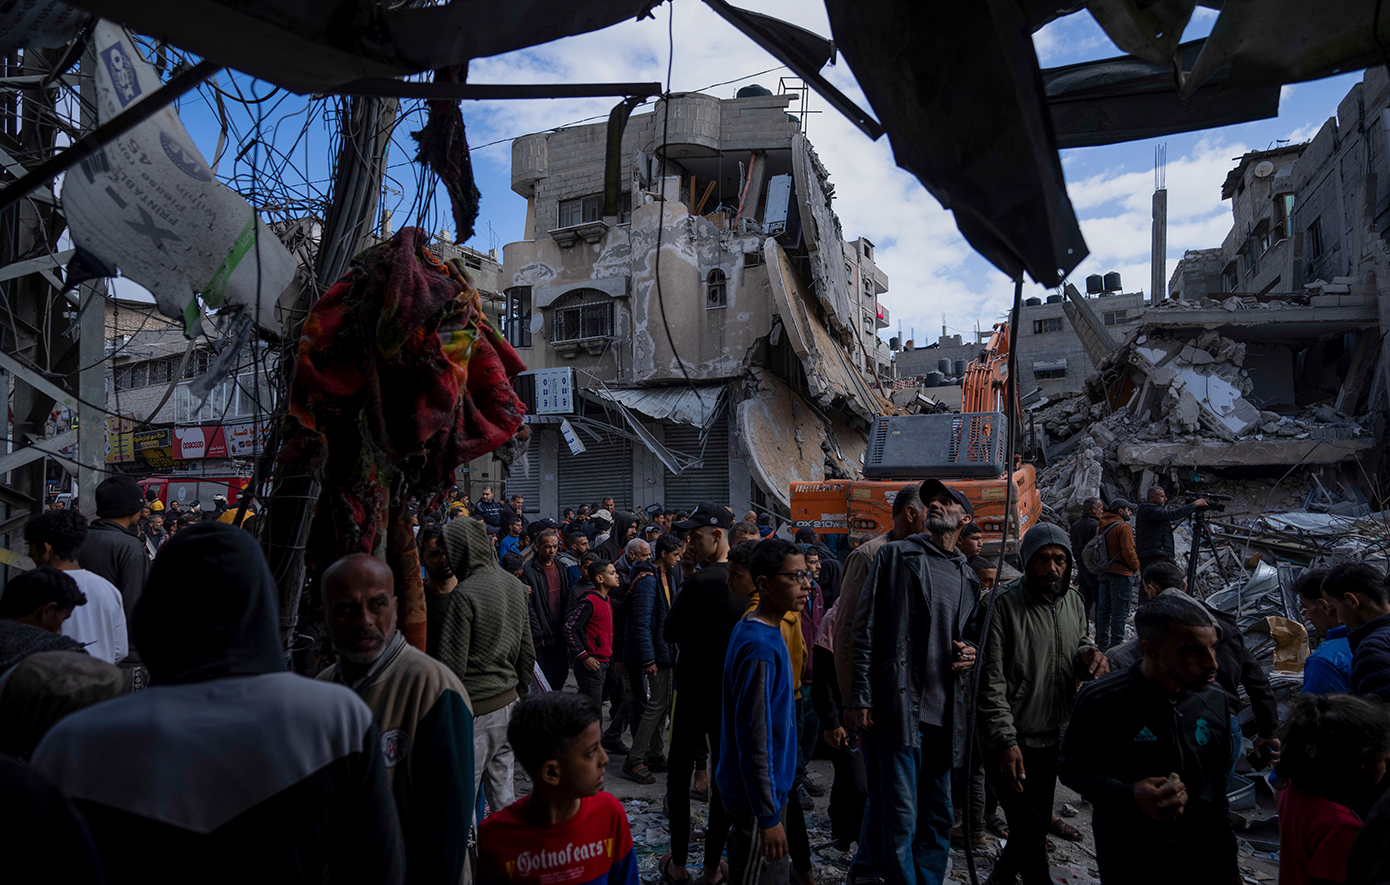 Οι διαπραγματεύσεις για την ανακωχή στη Γάζα εντείνονται, όπως και οι φόβοι για λιμό